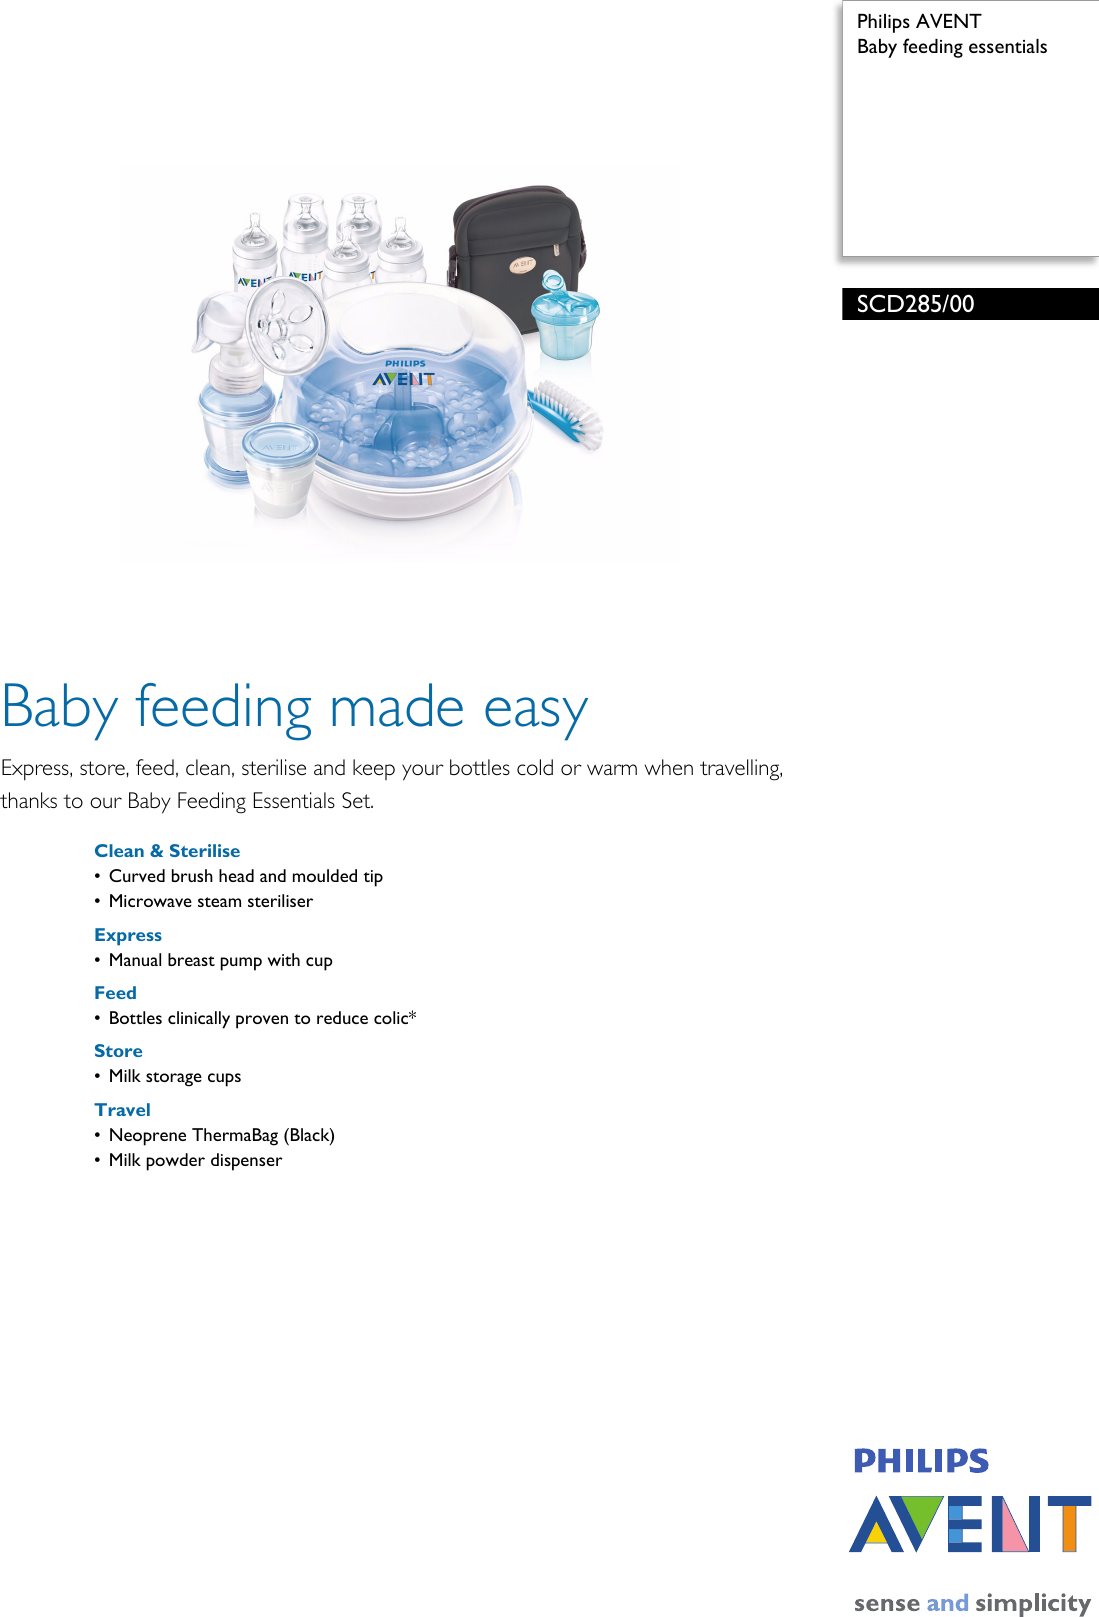 baby feeding essentials